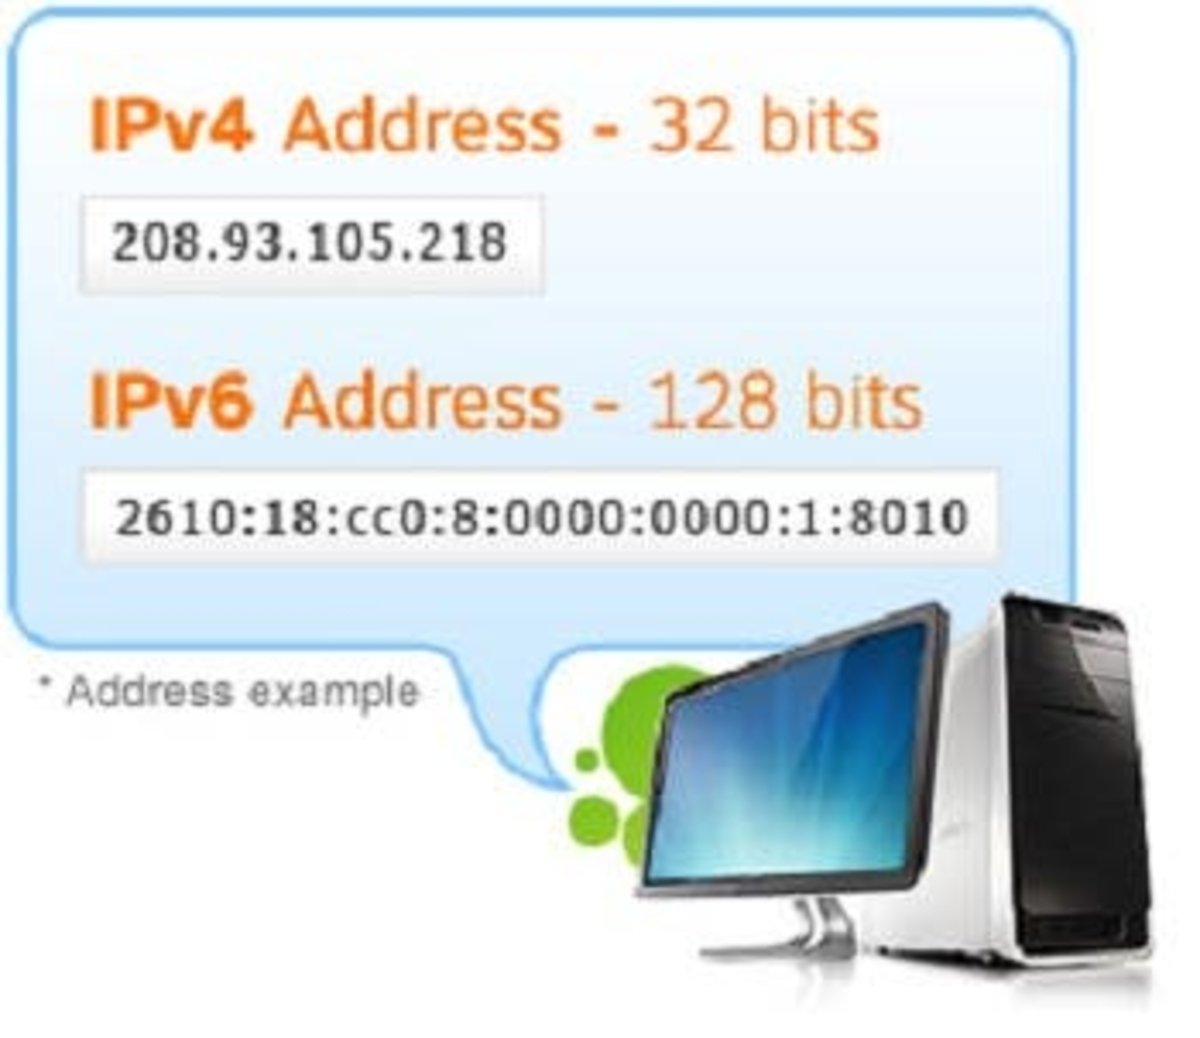 IP4vsIP6